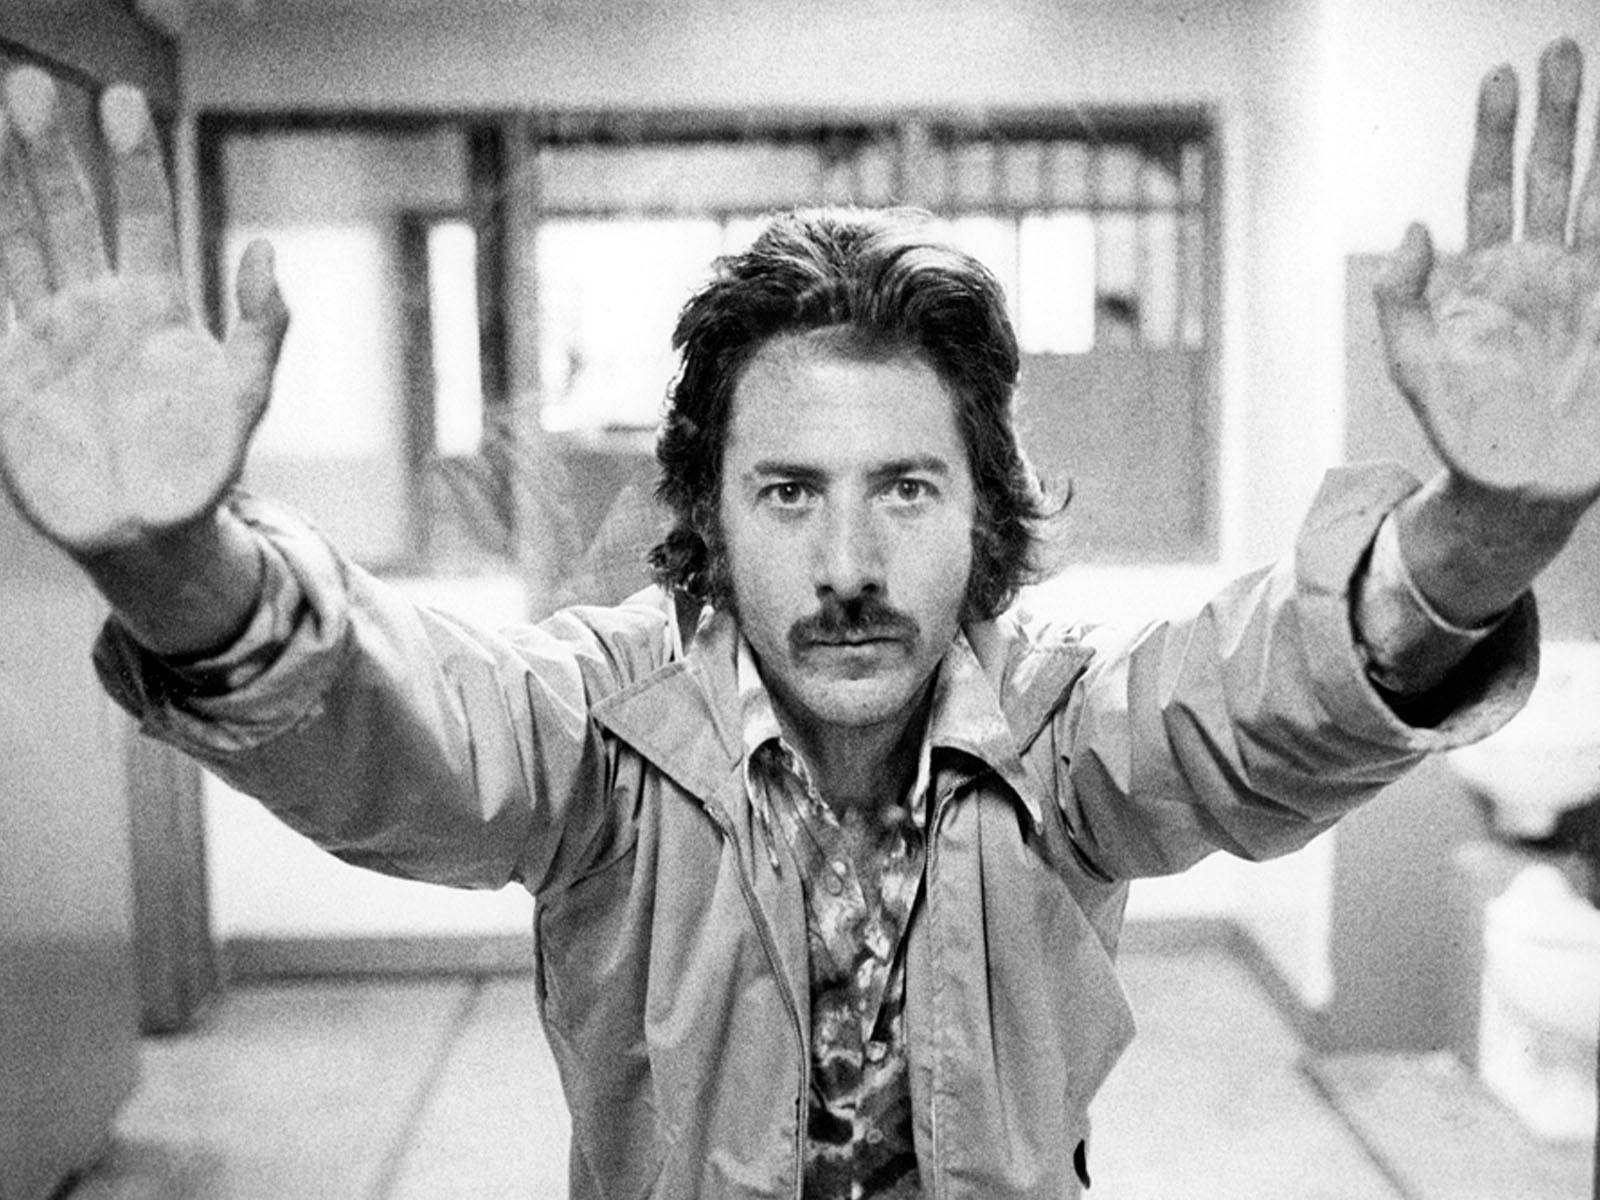 Personajede La Película Interpretado Por Dustin Hoffman, Max Dembo. Fondo de pantalla